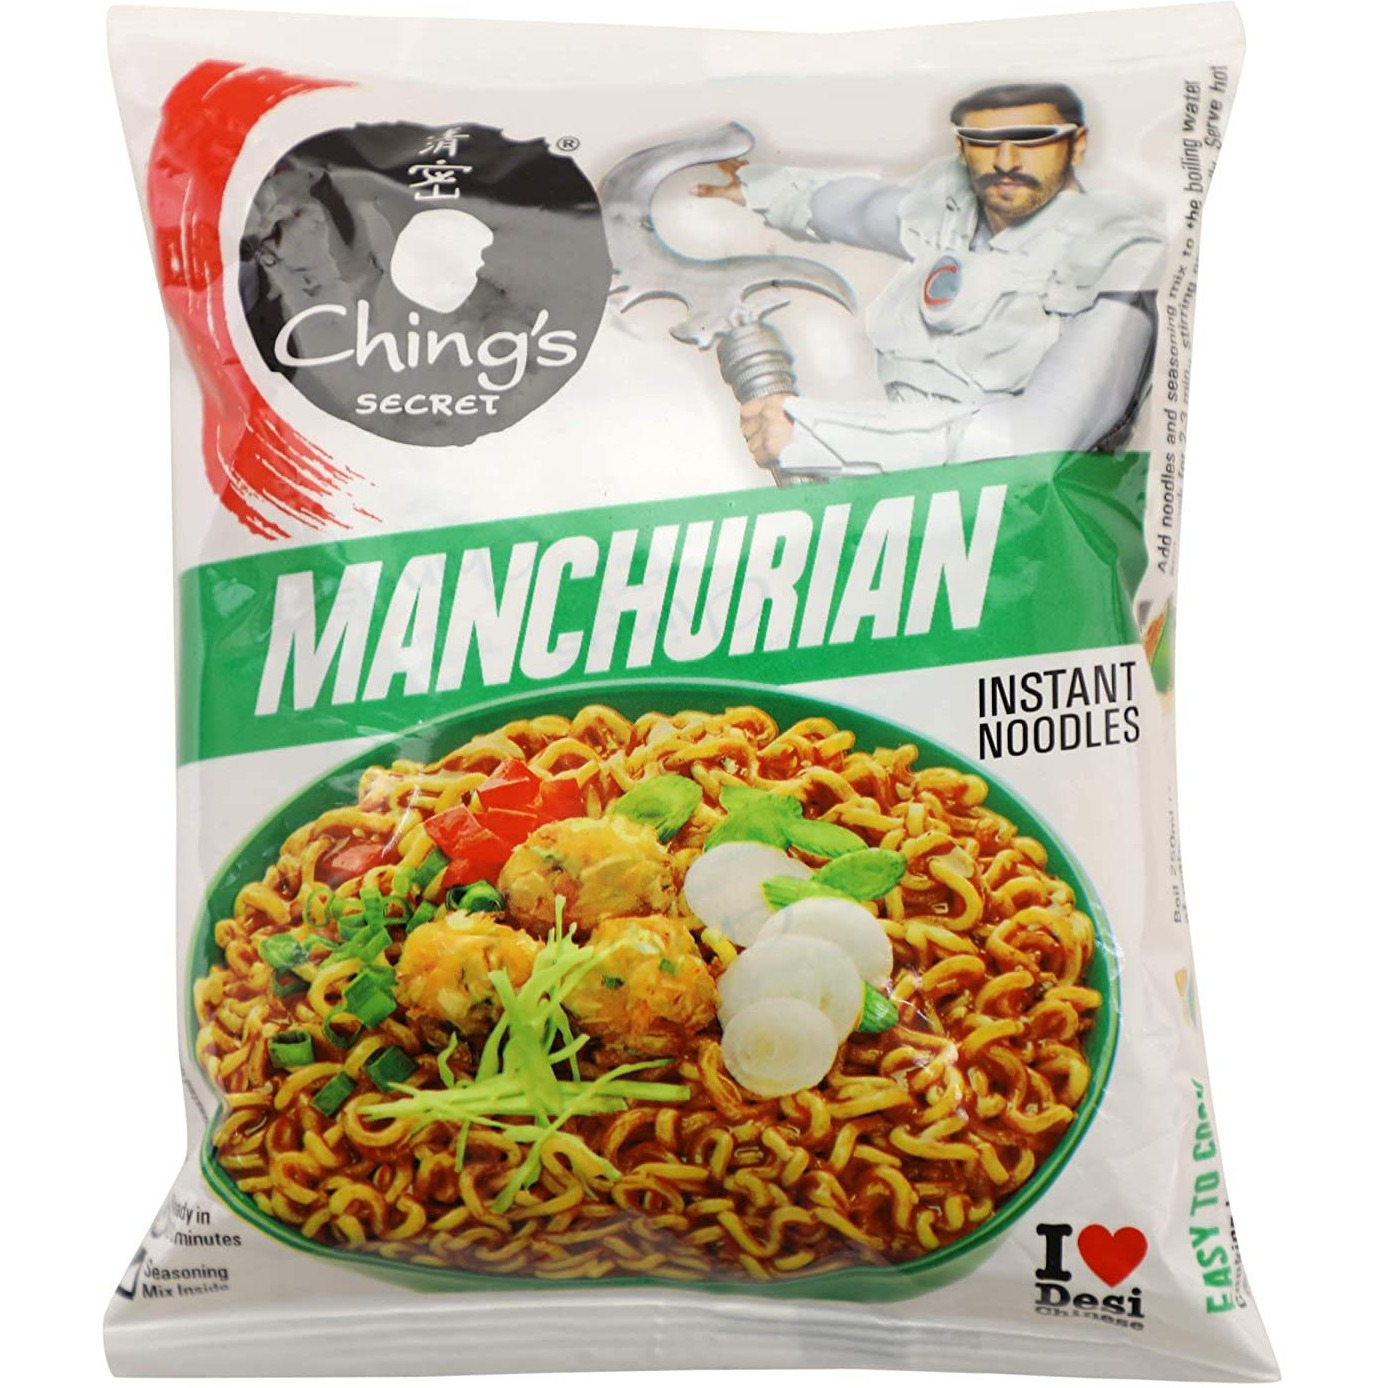 Ching's Secret Manchurian Instant Noodles - 60 Gm (2.11 Oz)